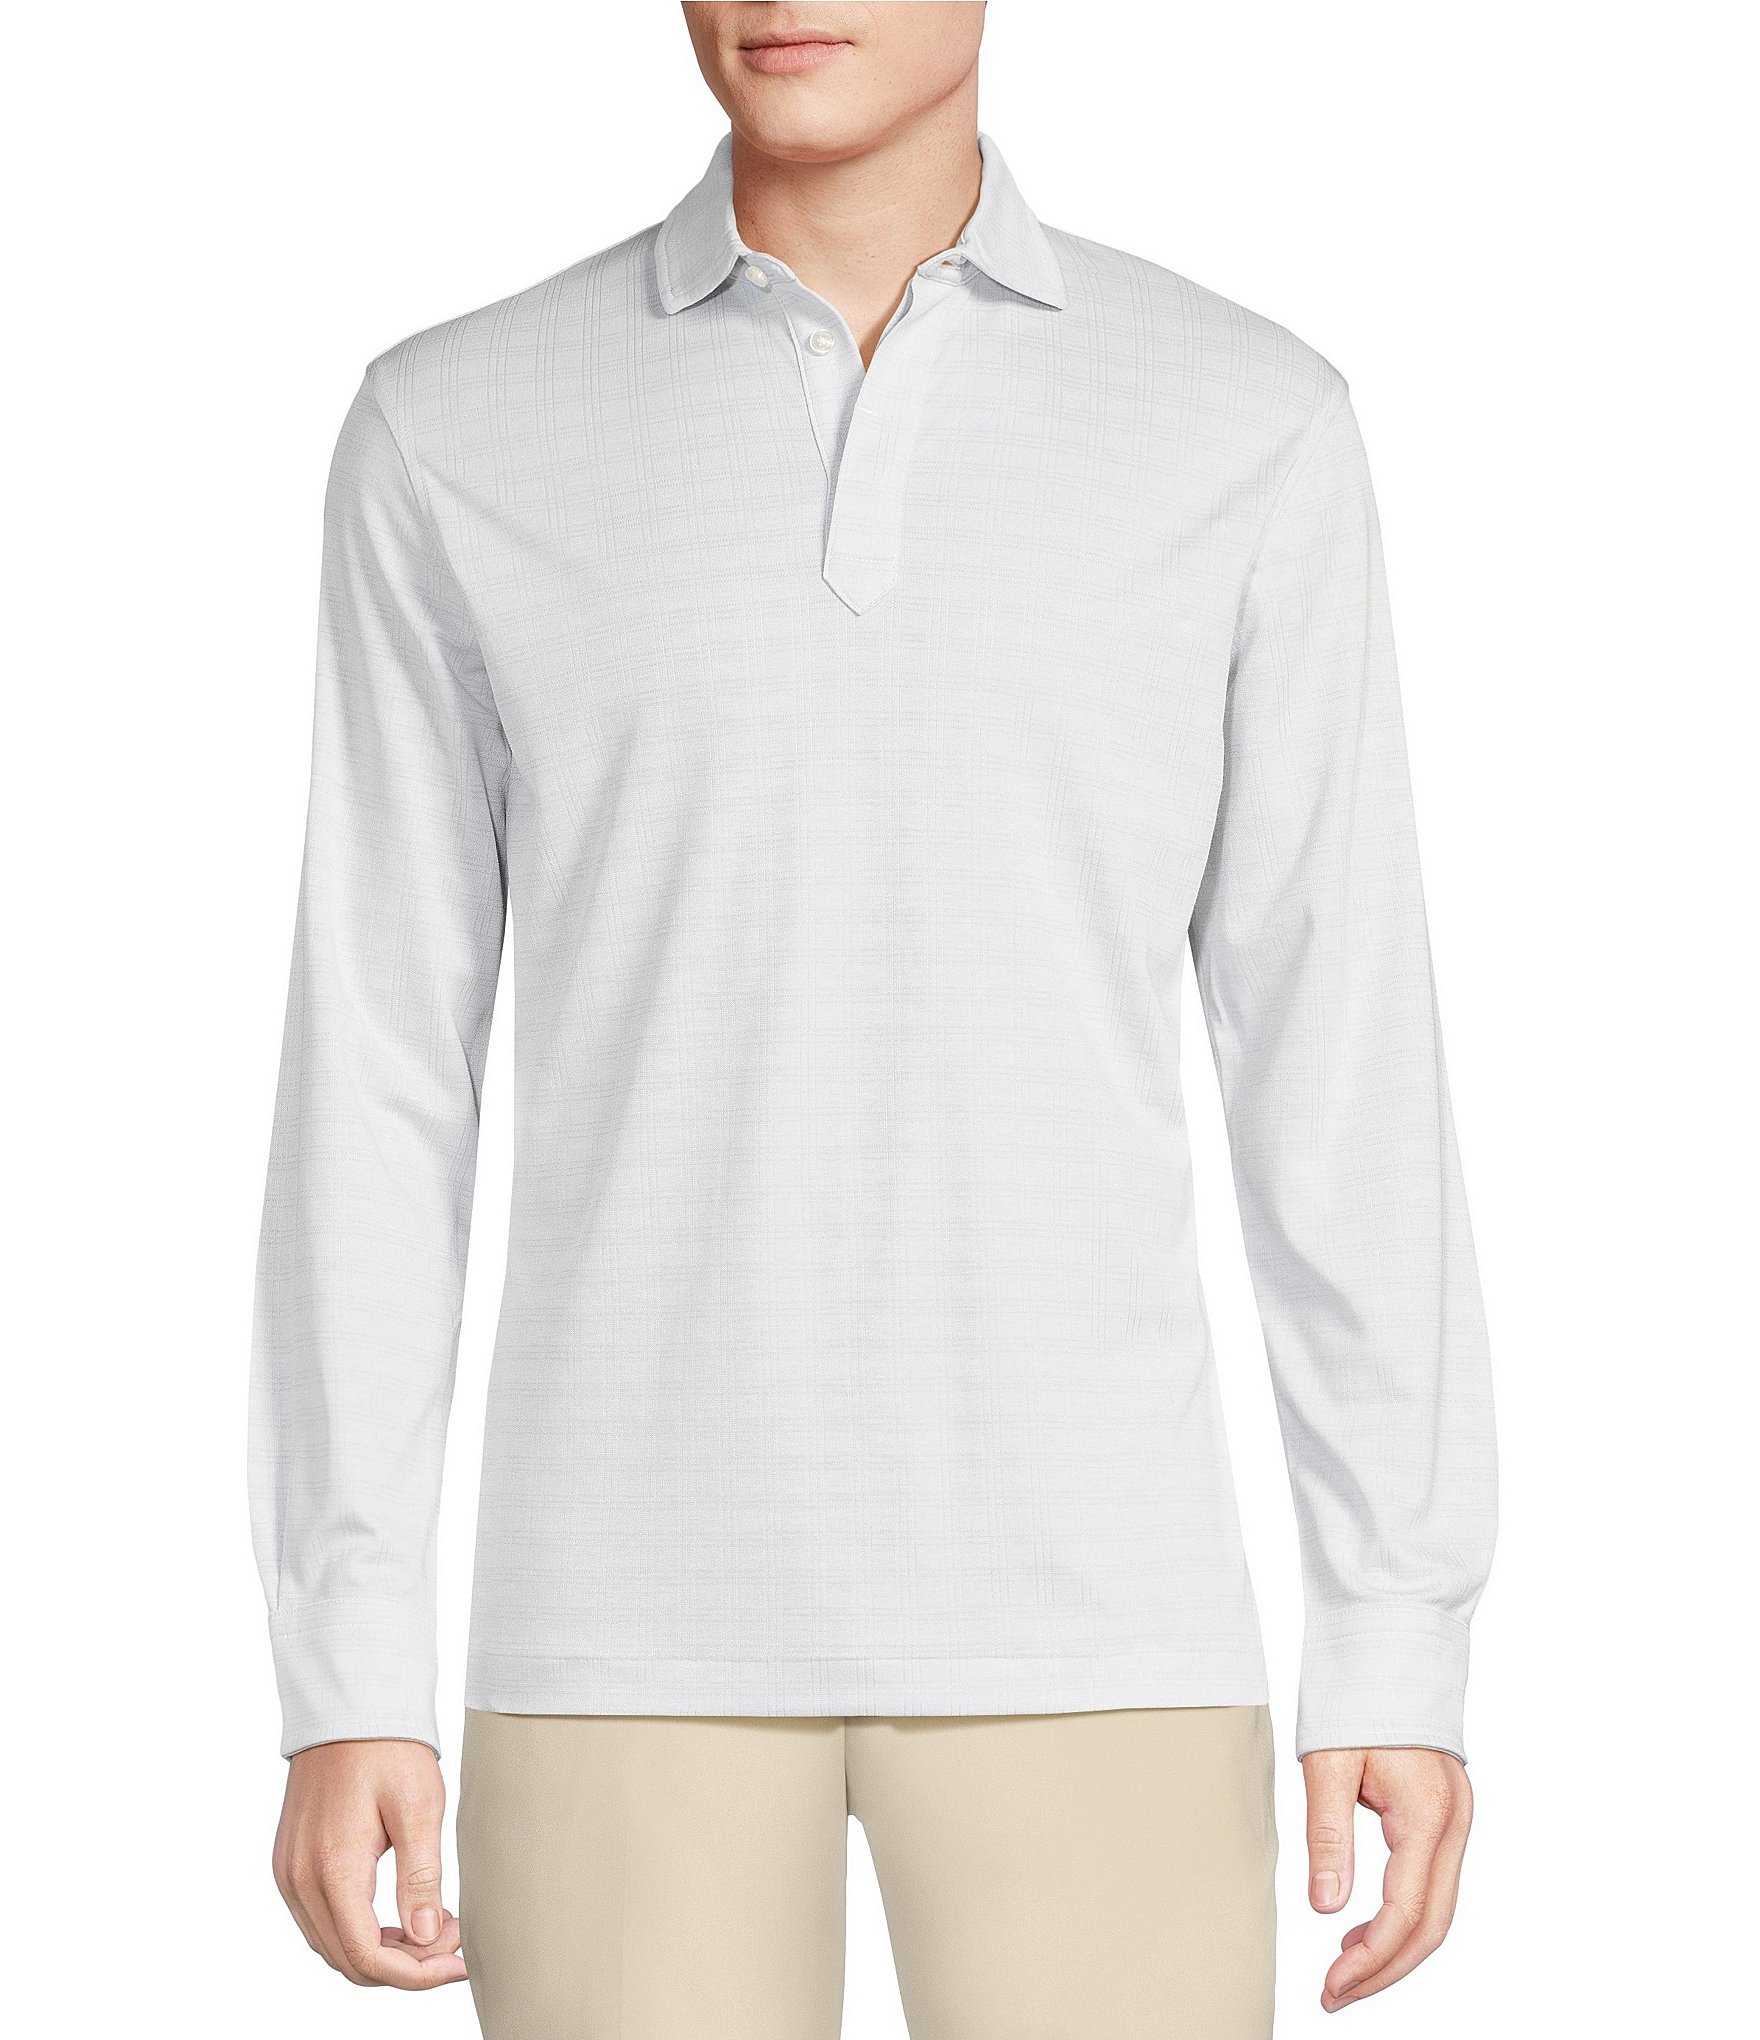 Daniel cremieux signature collection MEN'S cotton polo shirt GRAY, XL 